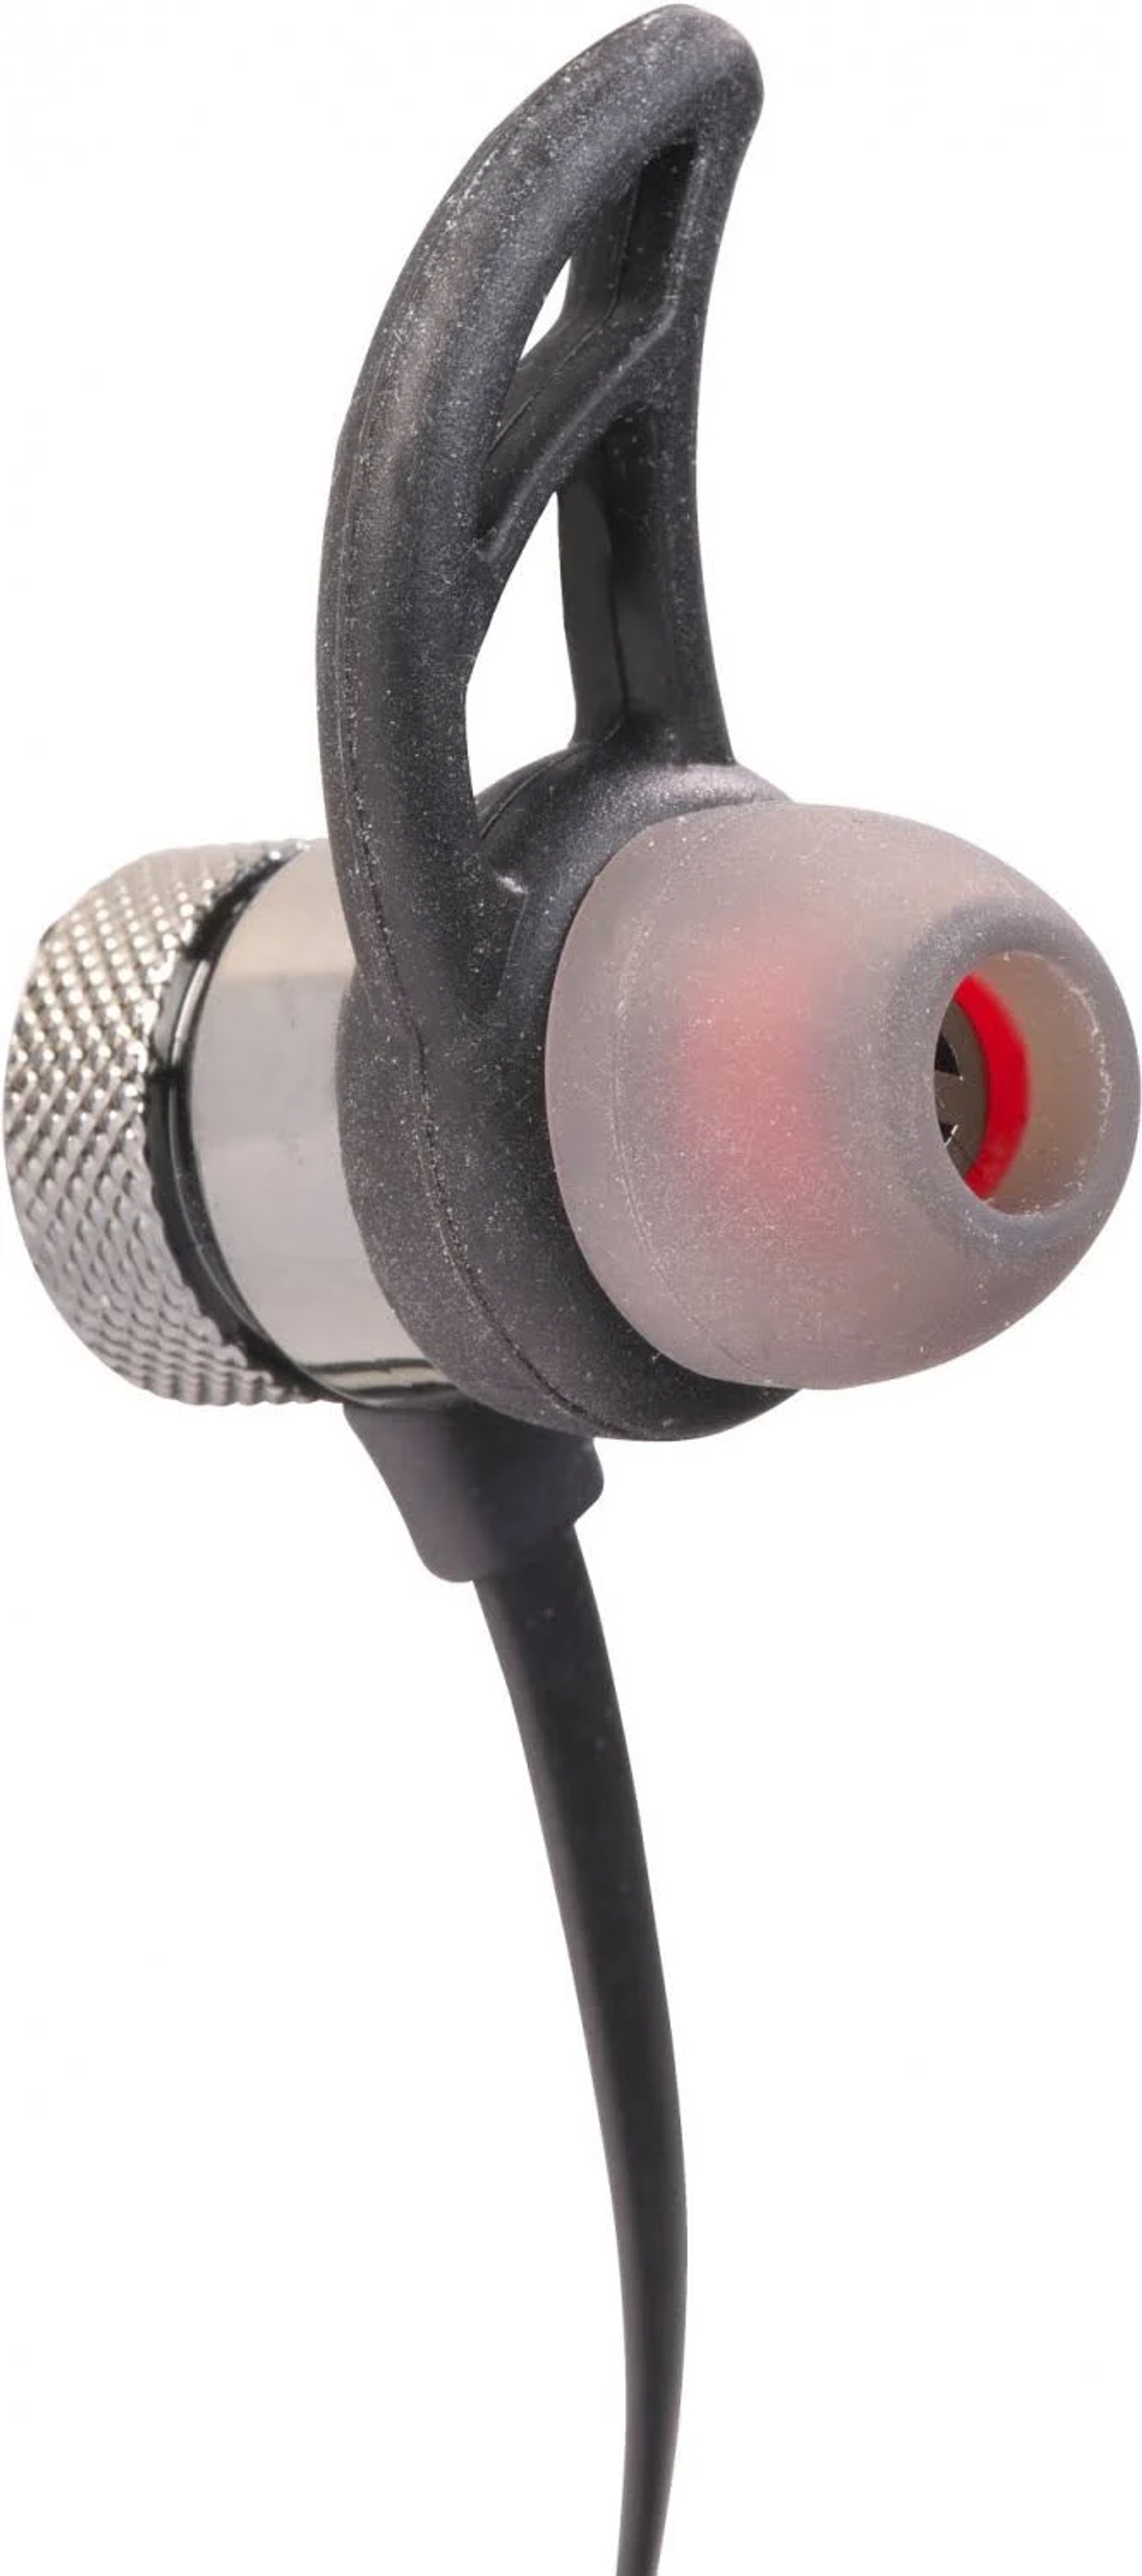 DENVER BTC-413, Over-ear Kopfhörer Schwarz Bluetooth